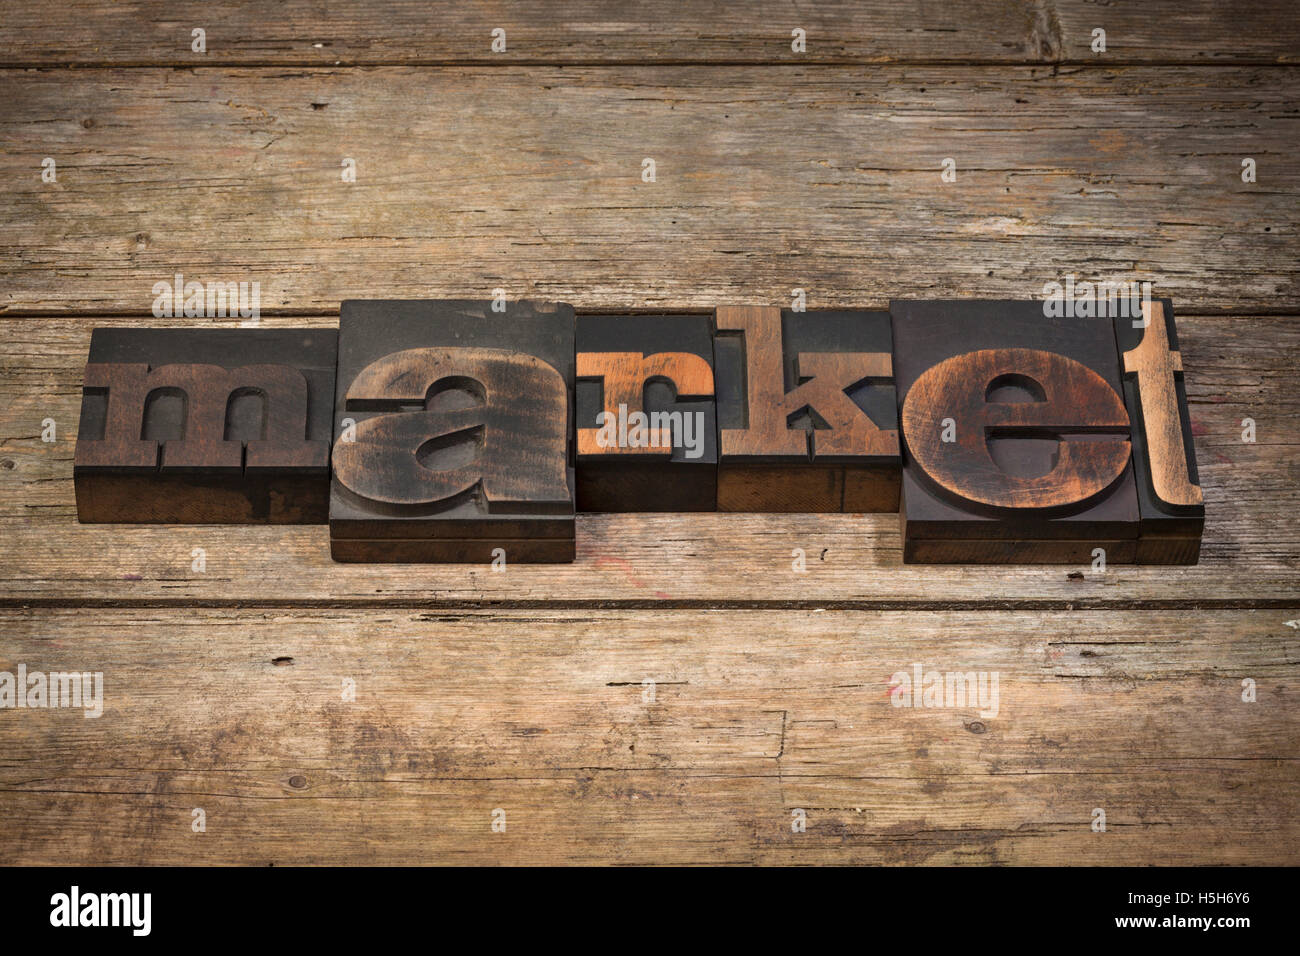 Marché, mot écrit avec la typographie vintage blocks sur fond de bois rustique Banque D'Images